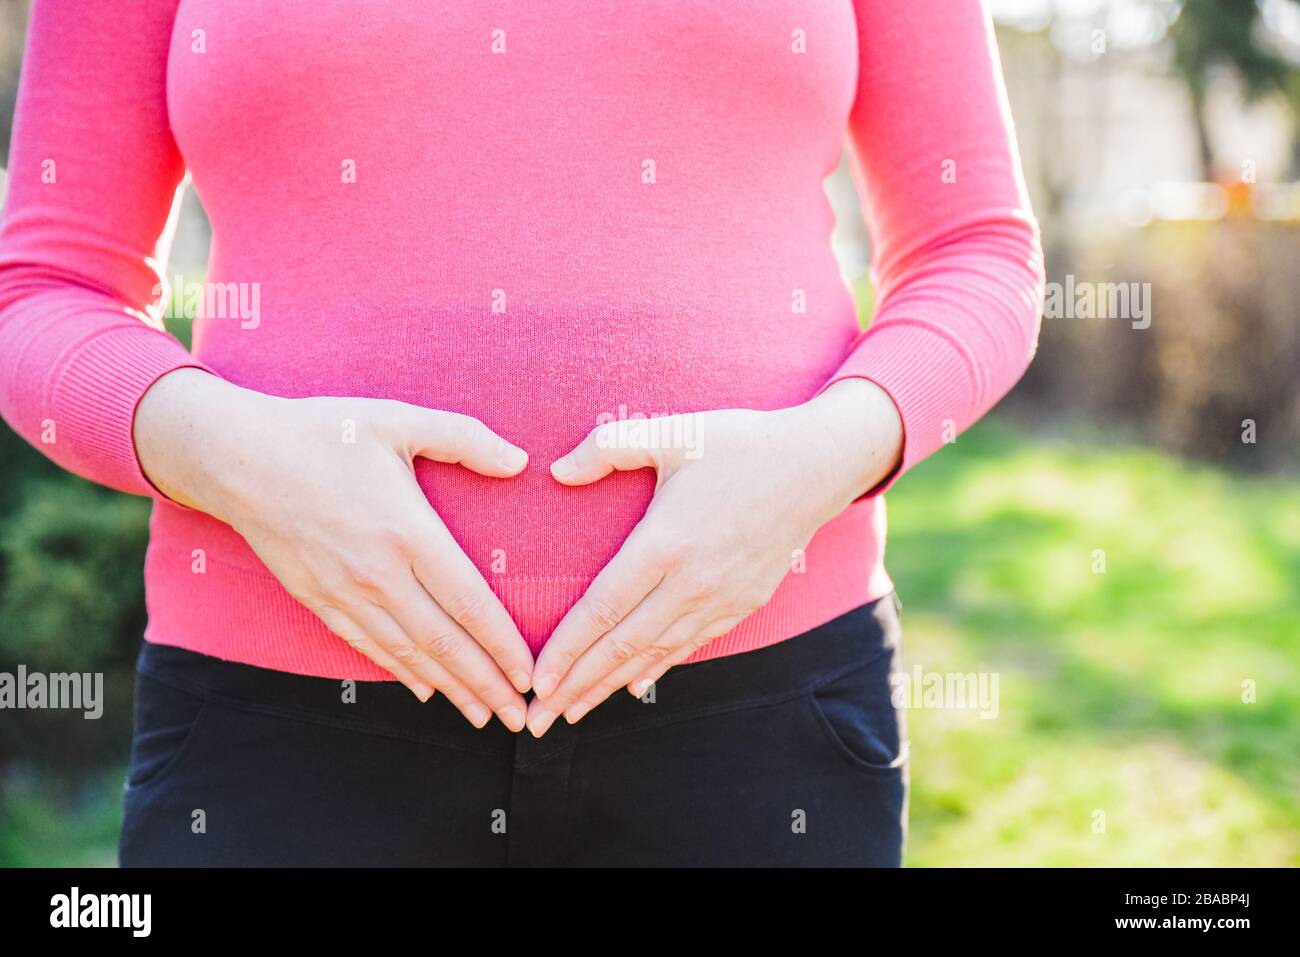 Nahaufnahme einer schwangeren Frau, die an einem sonnigen Frühlingnachmittag draußen steht und ihre Hände in Form eines Herzens am Bauch hält Stockfoto